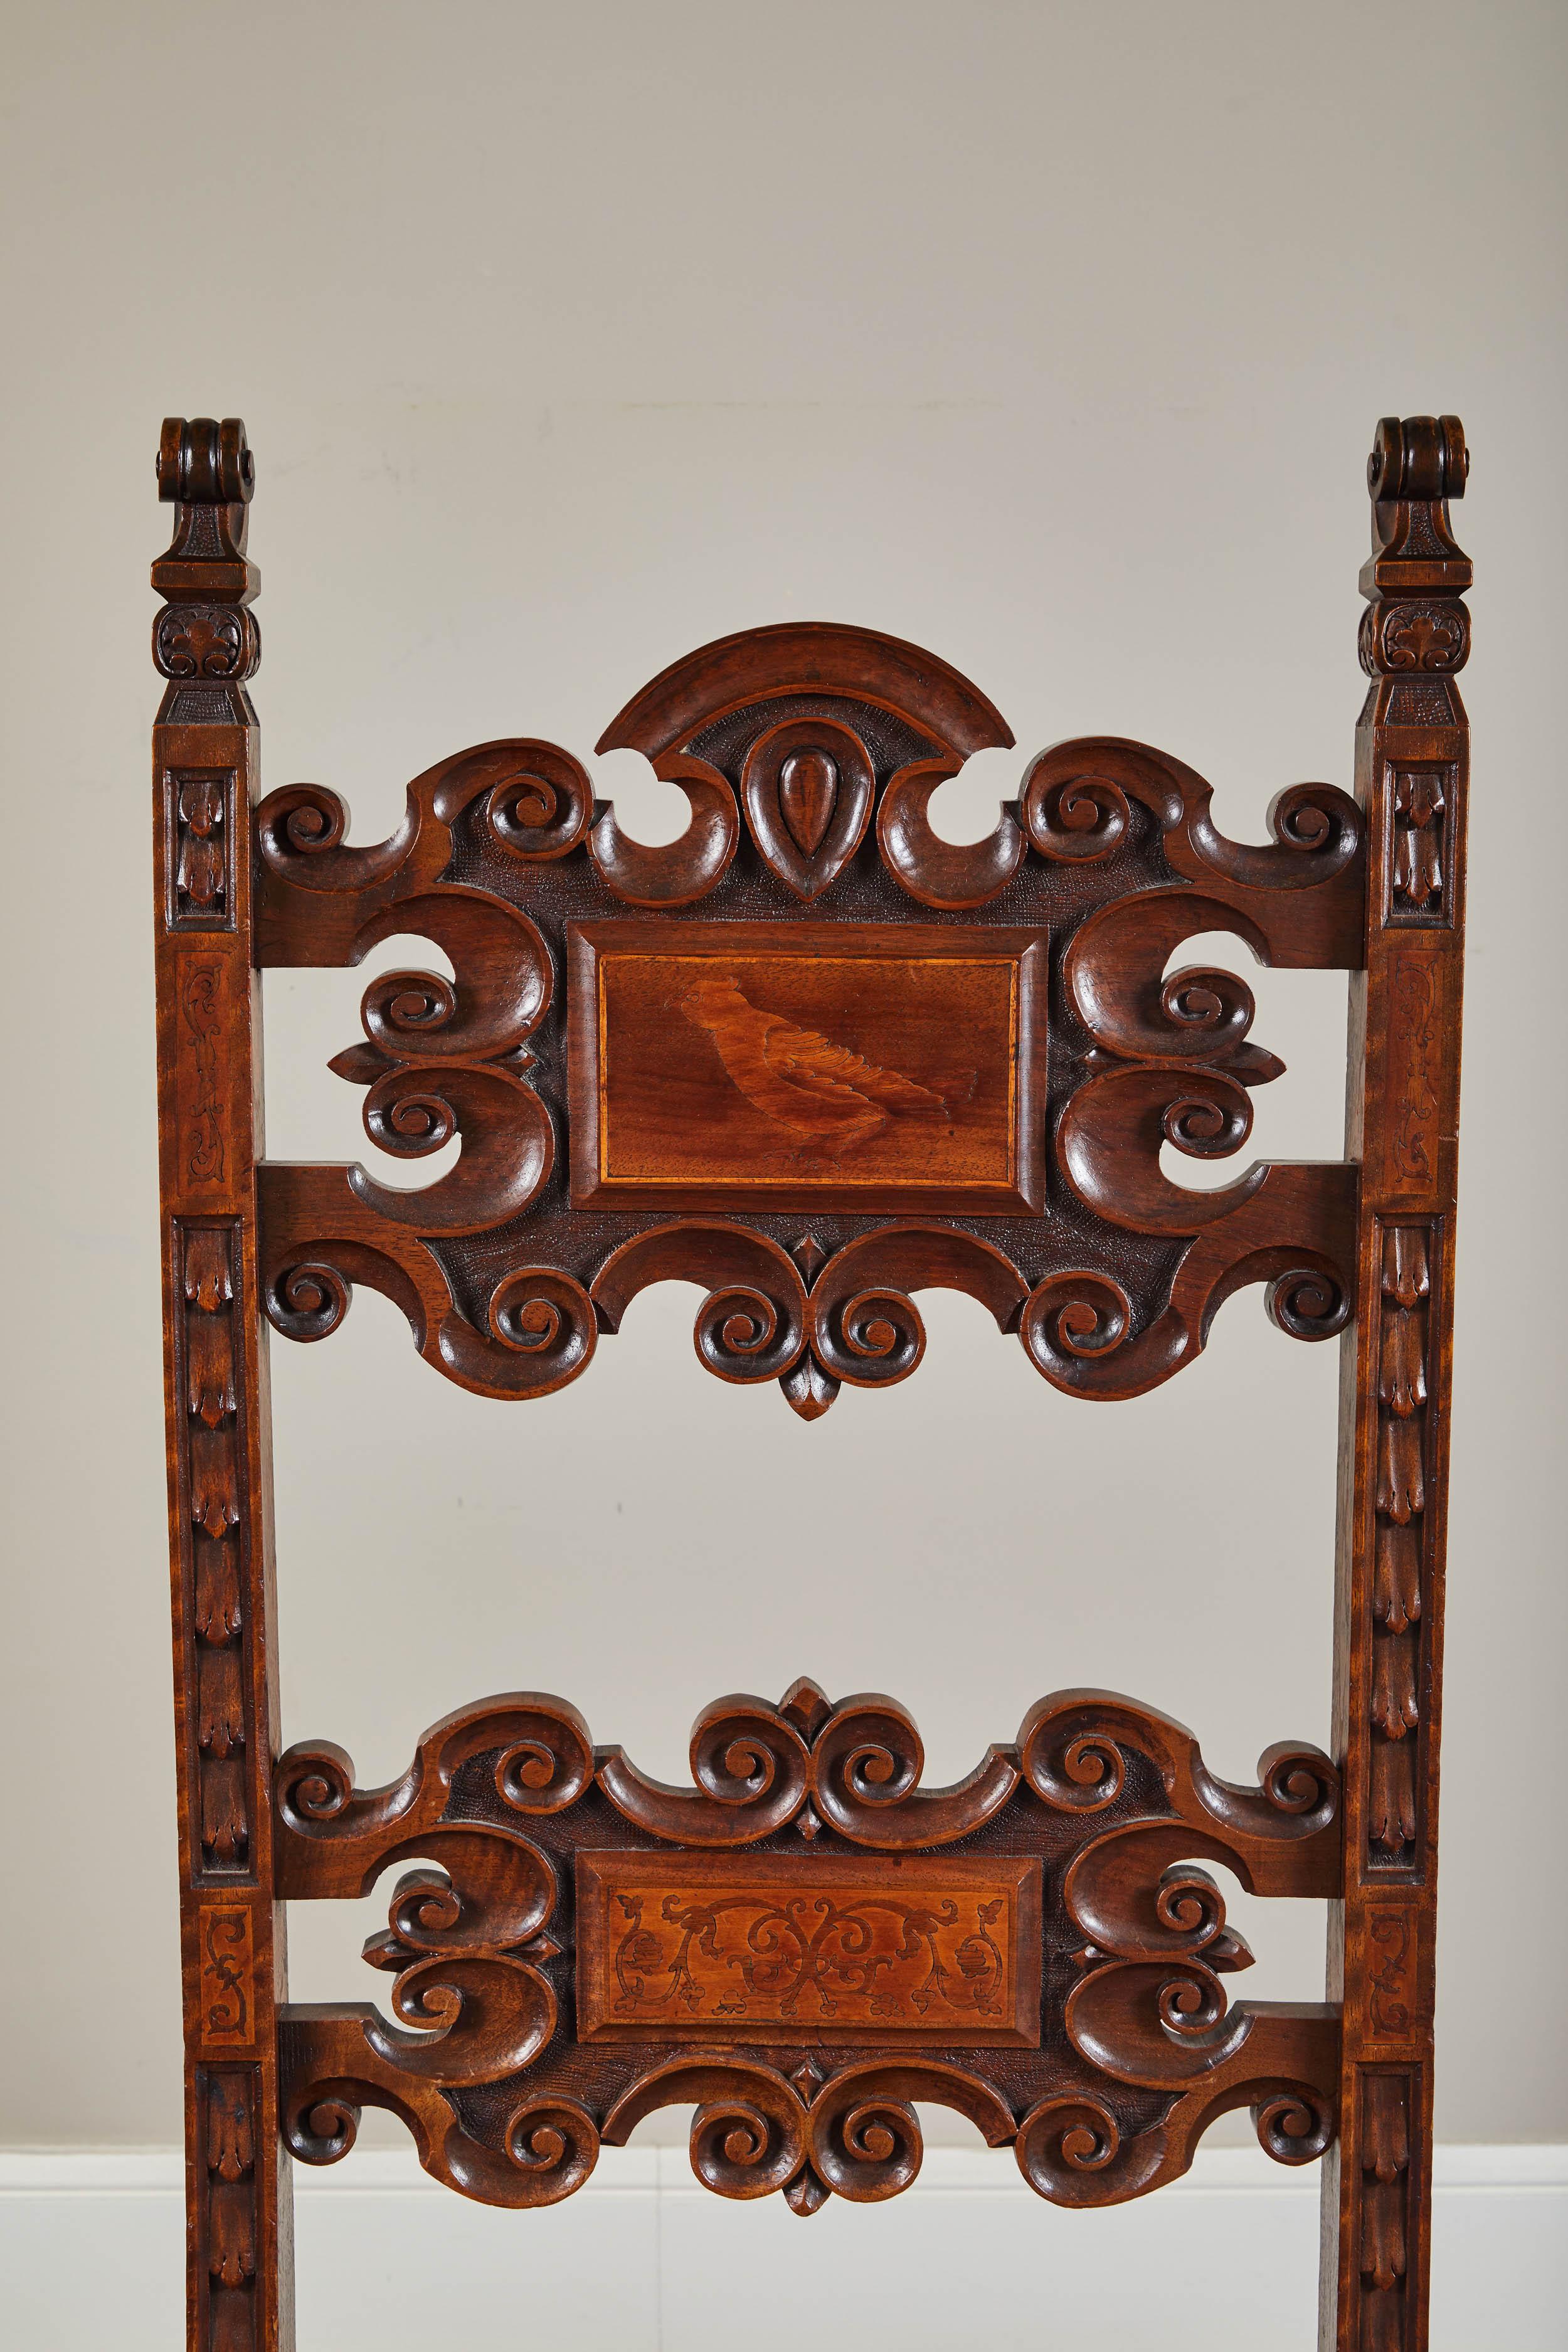 Il s'agit d'un ensemble de quatre chaises de salle à manger en noyer espagnol du XIXe siècle de style renaissance. Récemment retapissé et refini. L'ensemble est joliment sculpté, avec des lignes fluides et des proportions gracieuses. Le dossier